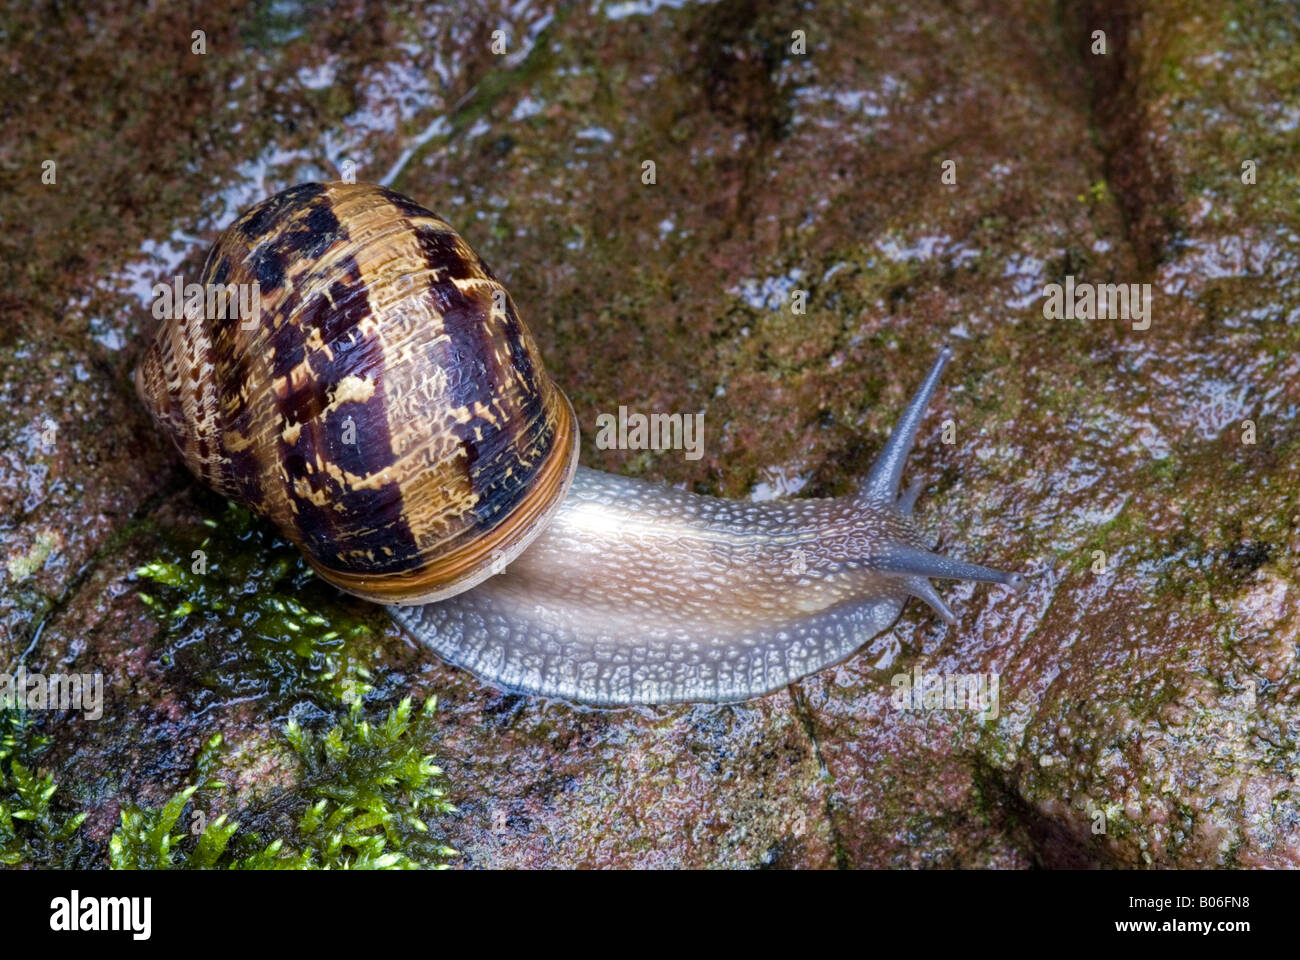 Land snail, Copse Snail (Aporia crataegi) on wet rock Stock Photo